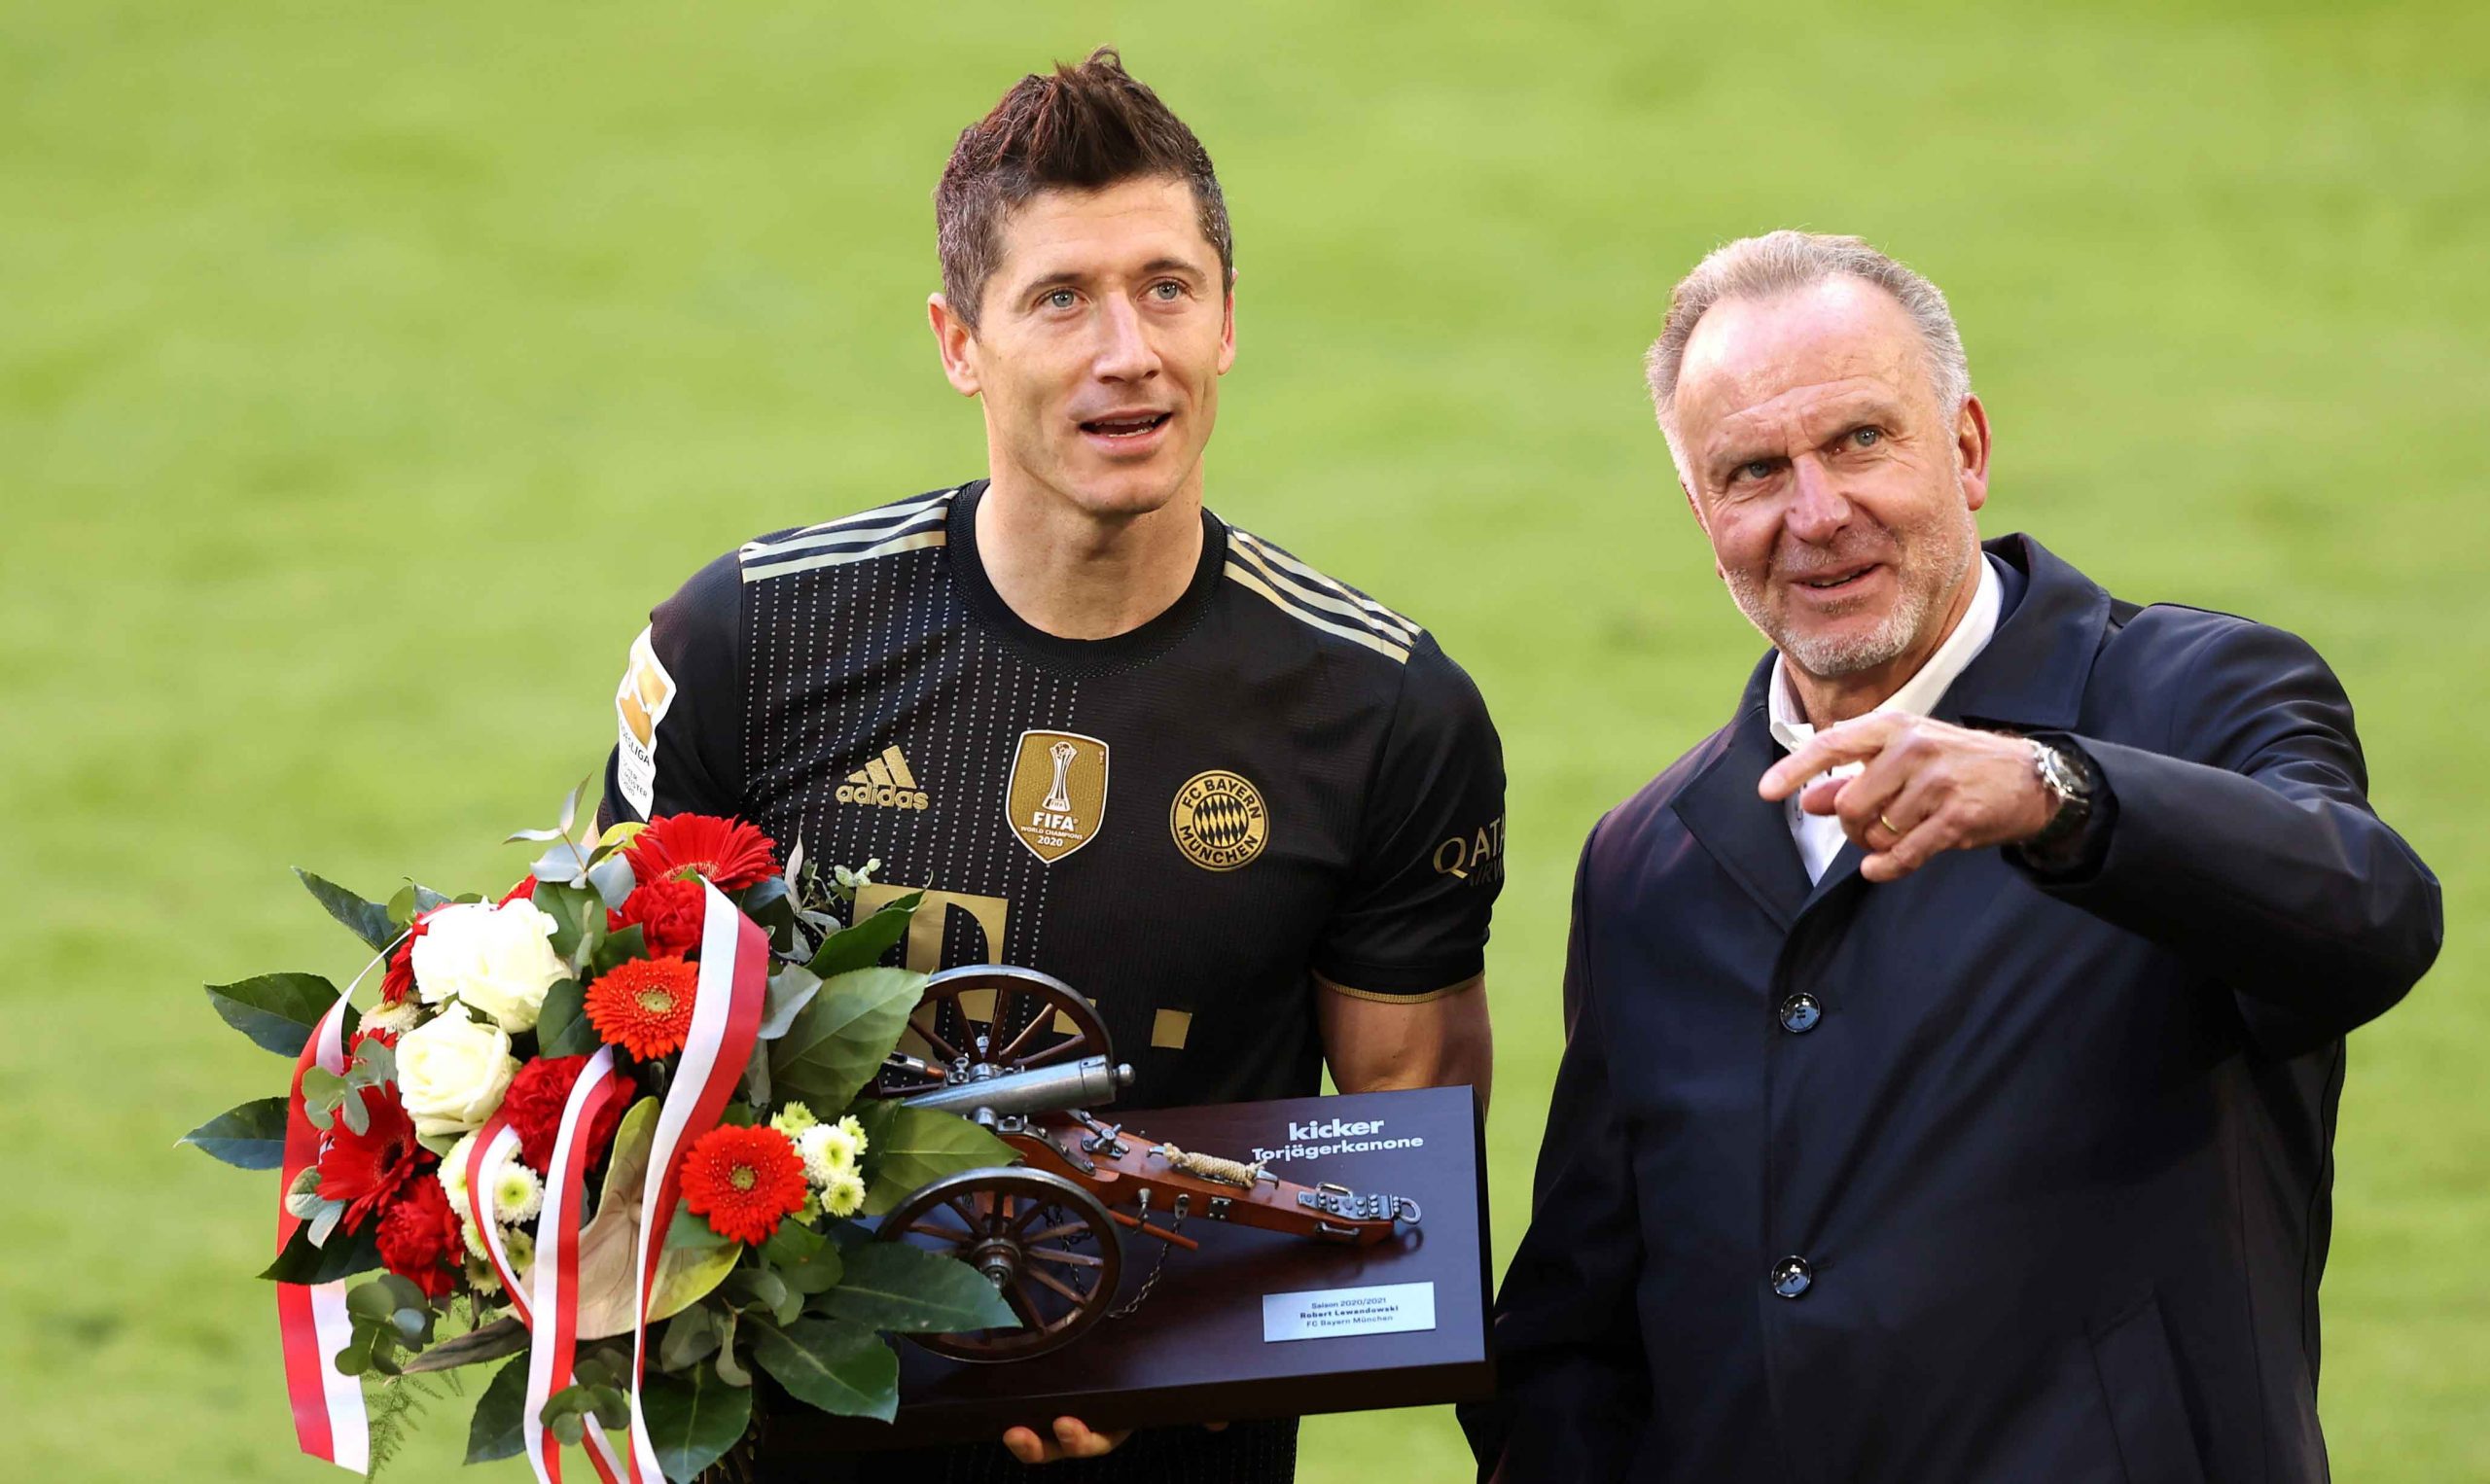 Robert Lewandowski (L) del FC Bayern München recibe el premio al máximo goleador de la temporada tras el partido de fútbol de la Bundesliga alemana entre el FC Bayern München y el FC Augsburg en el Allianz Arena en Munich, Alemania, el 22 de mayo de 2021. (Alemania) EFE